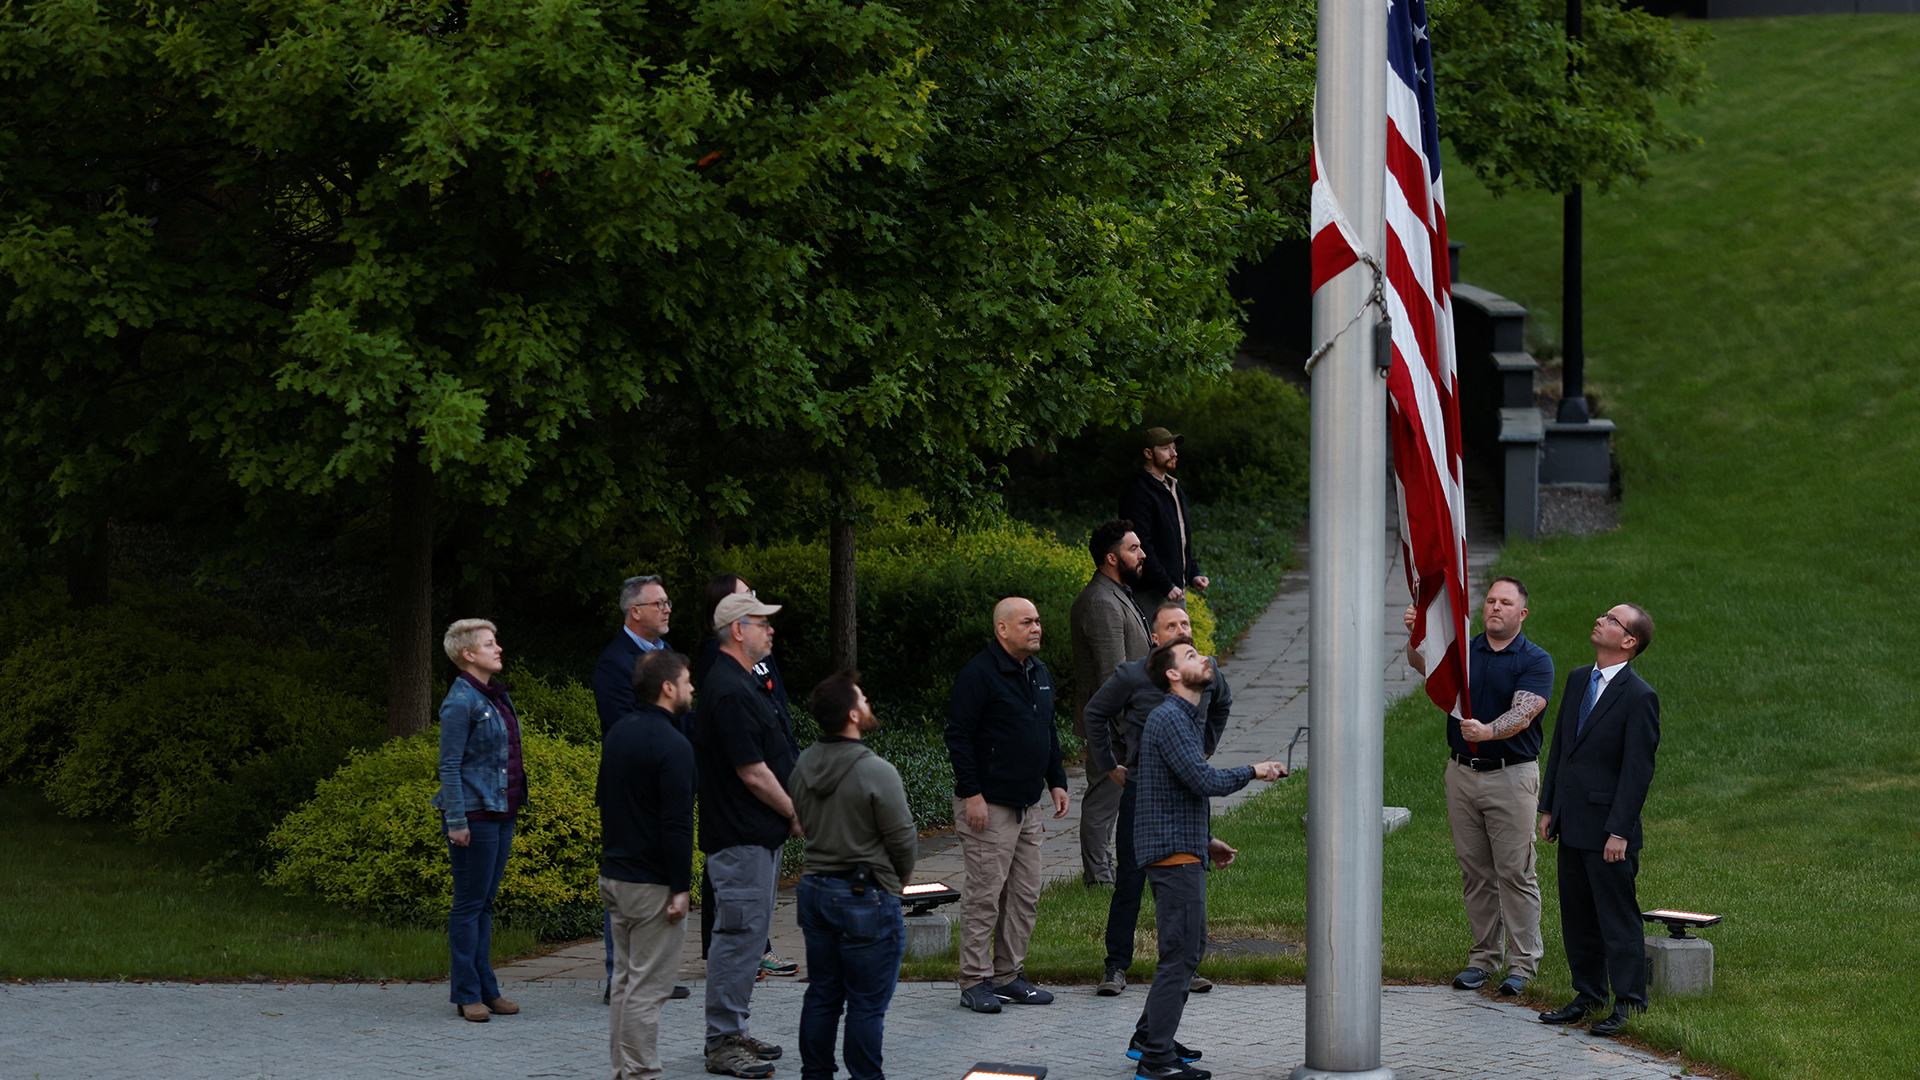 Die US-Flagge wird zum ersten Mal gehisst, nachdem amerikanische Diplomaten in die US-Botschaft in Kiew zurückgekehrt sind. | REUTERS